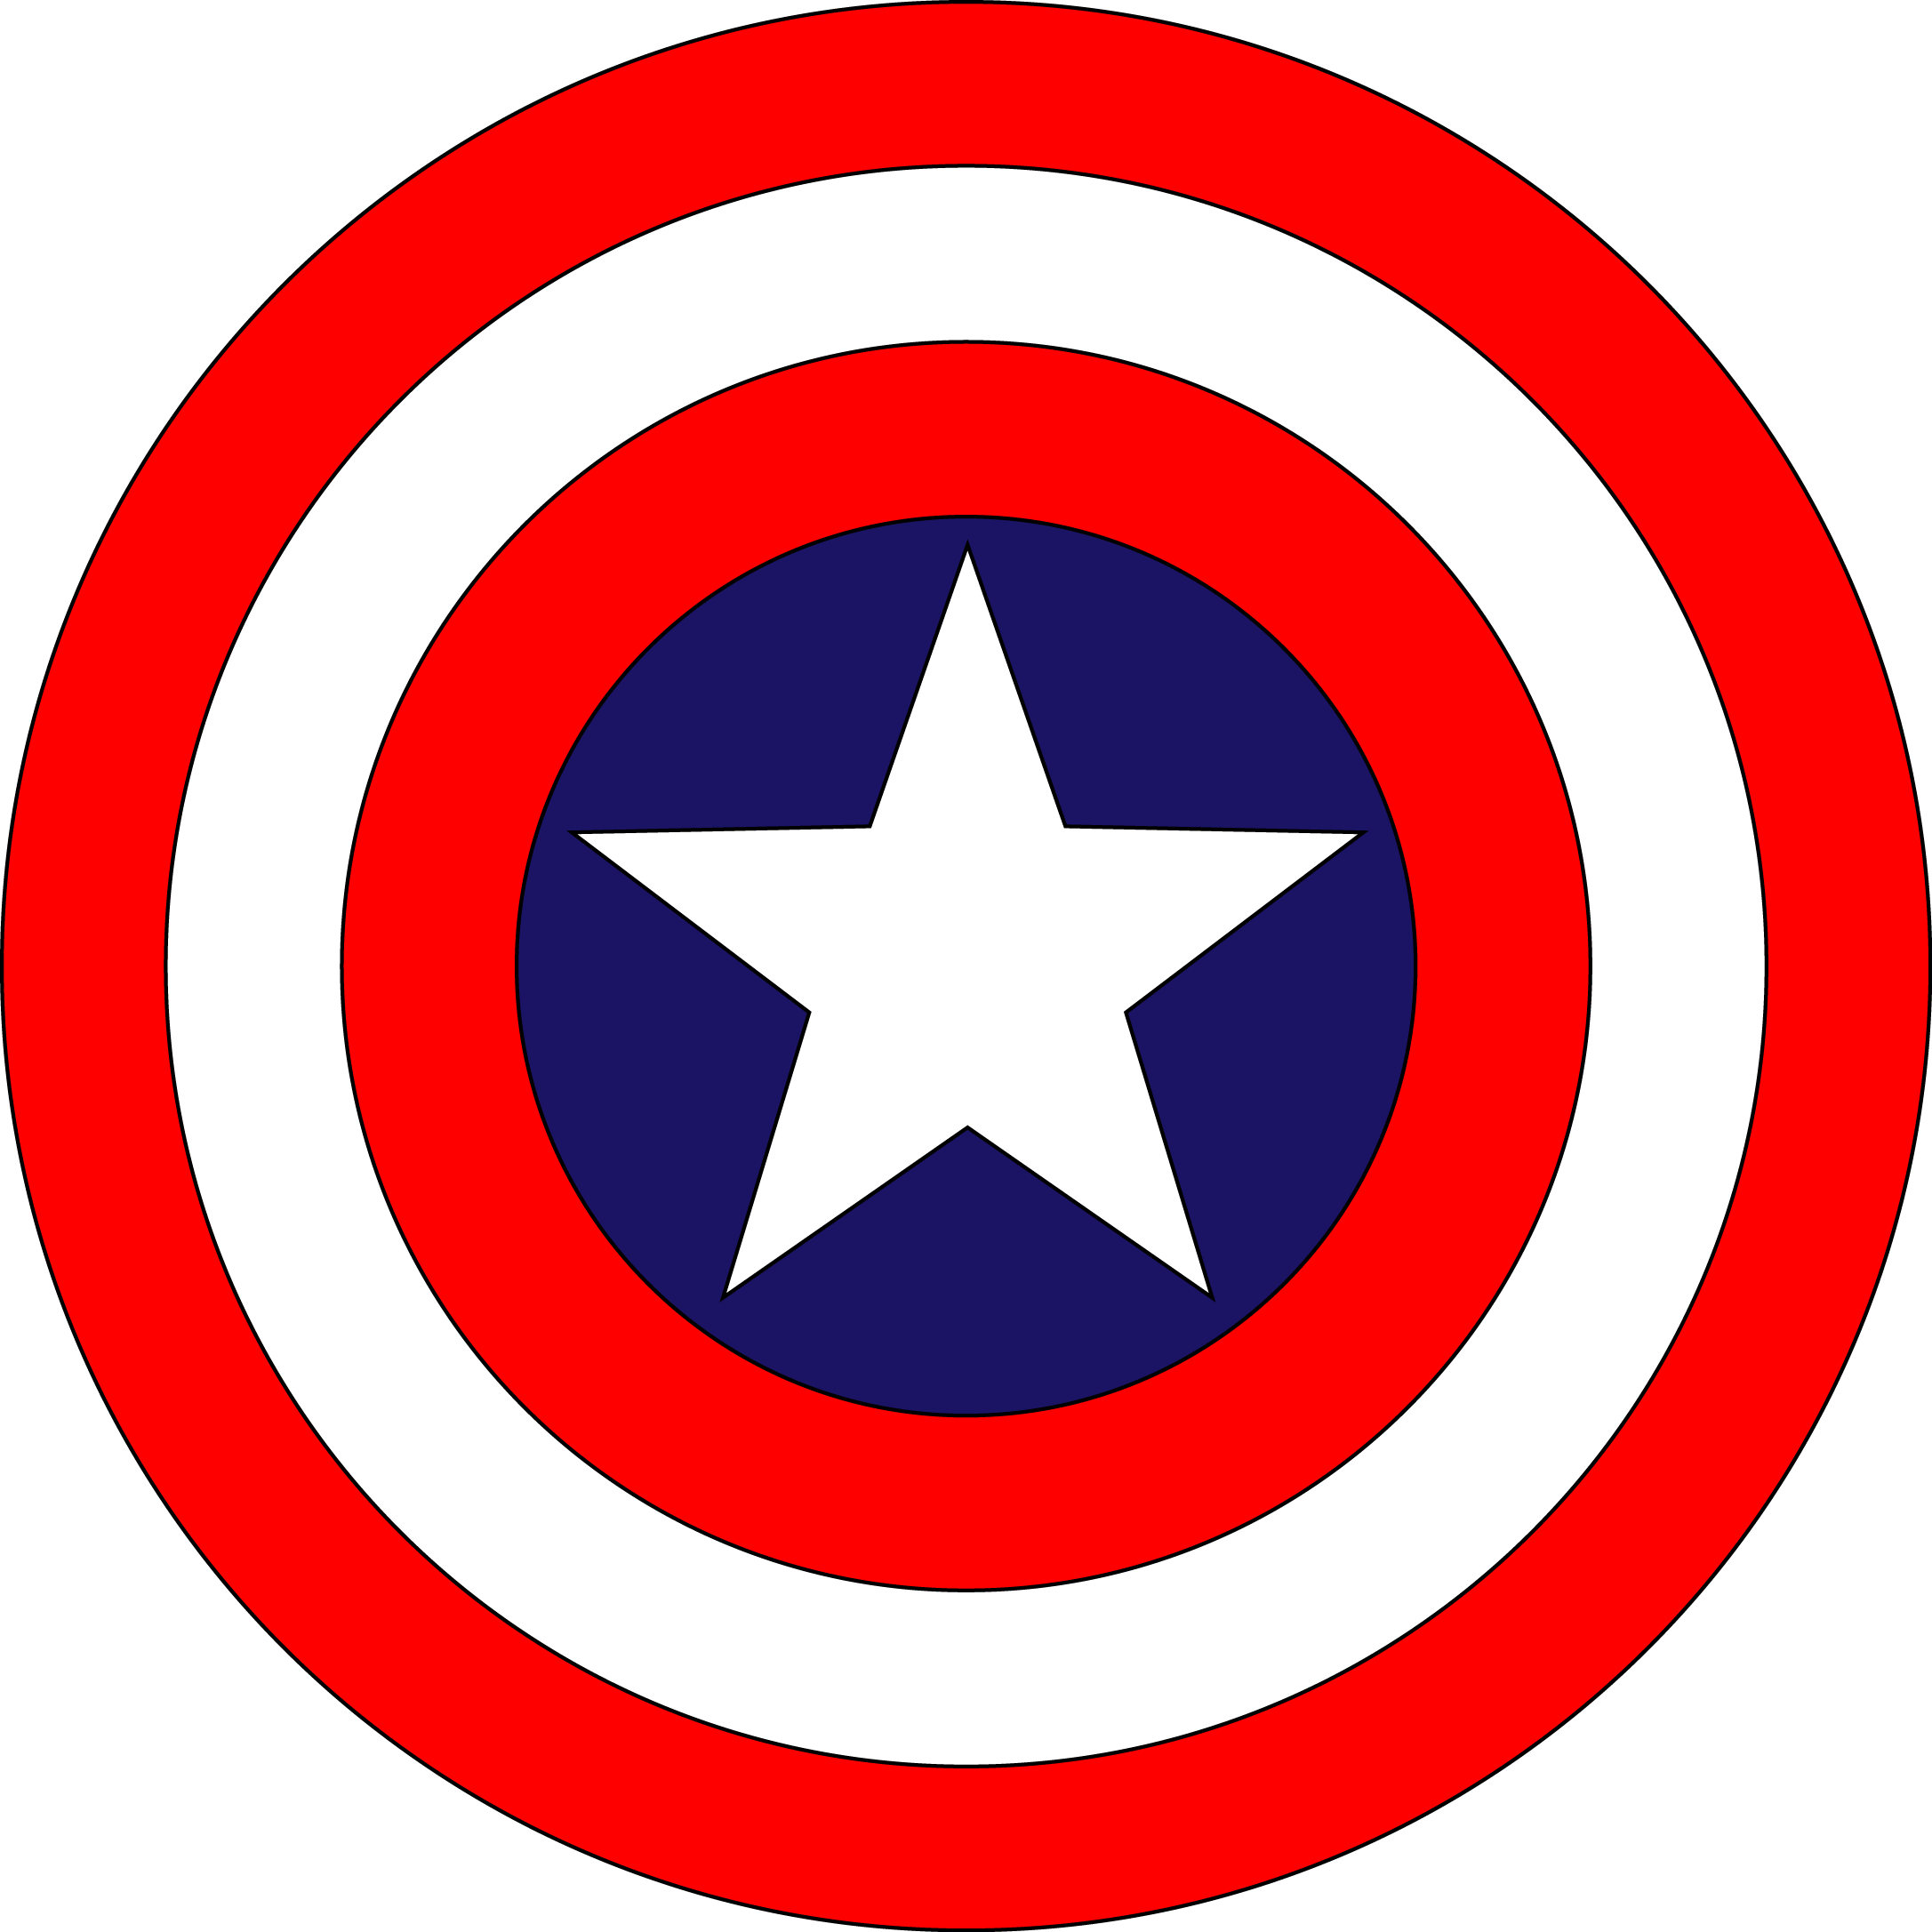 Captain Americas shield - Wikipedia